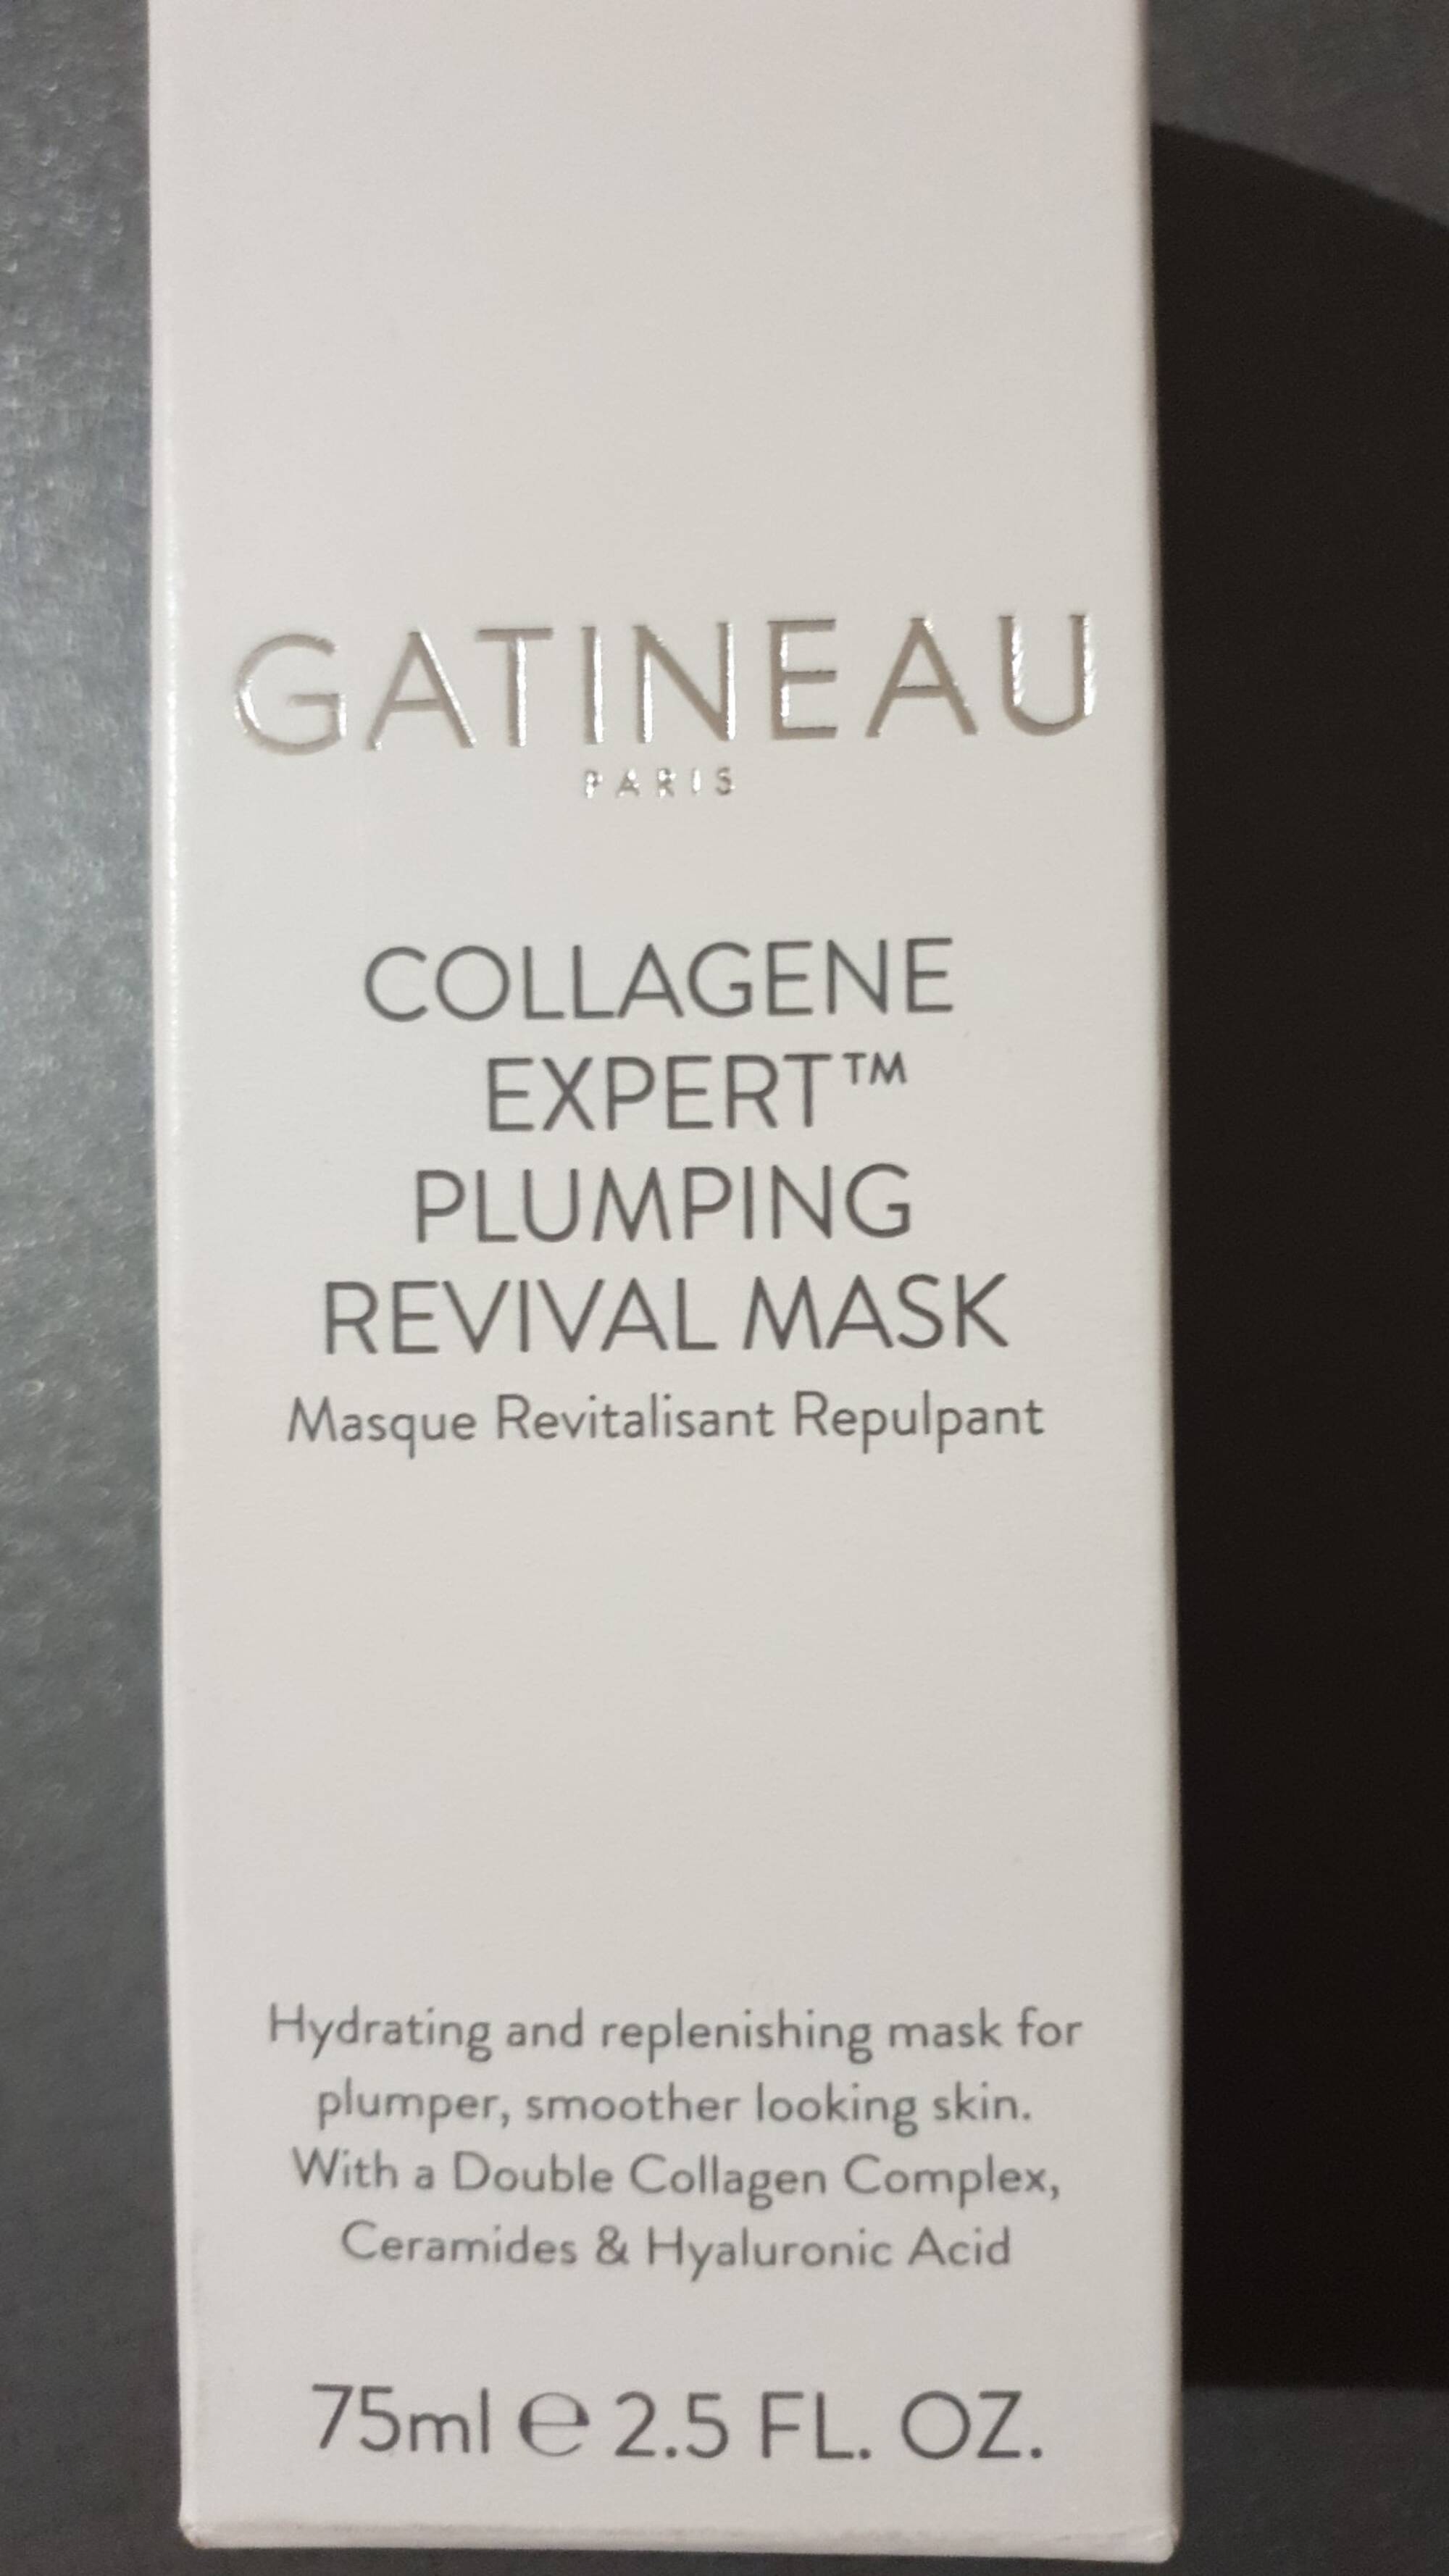 GATINEAU - Collagene expert - Masque revitalisant repulpant